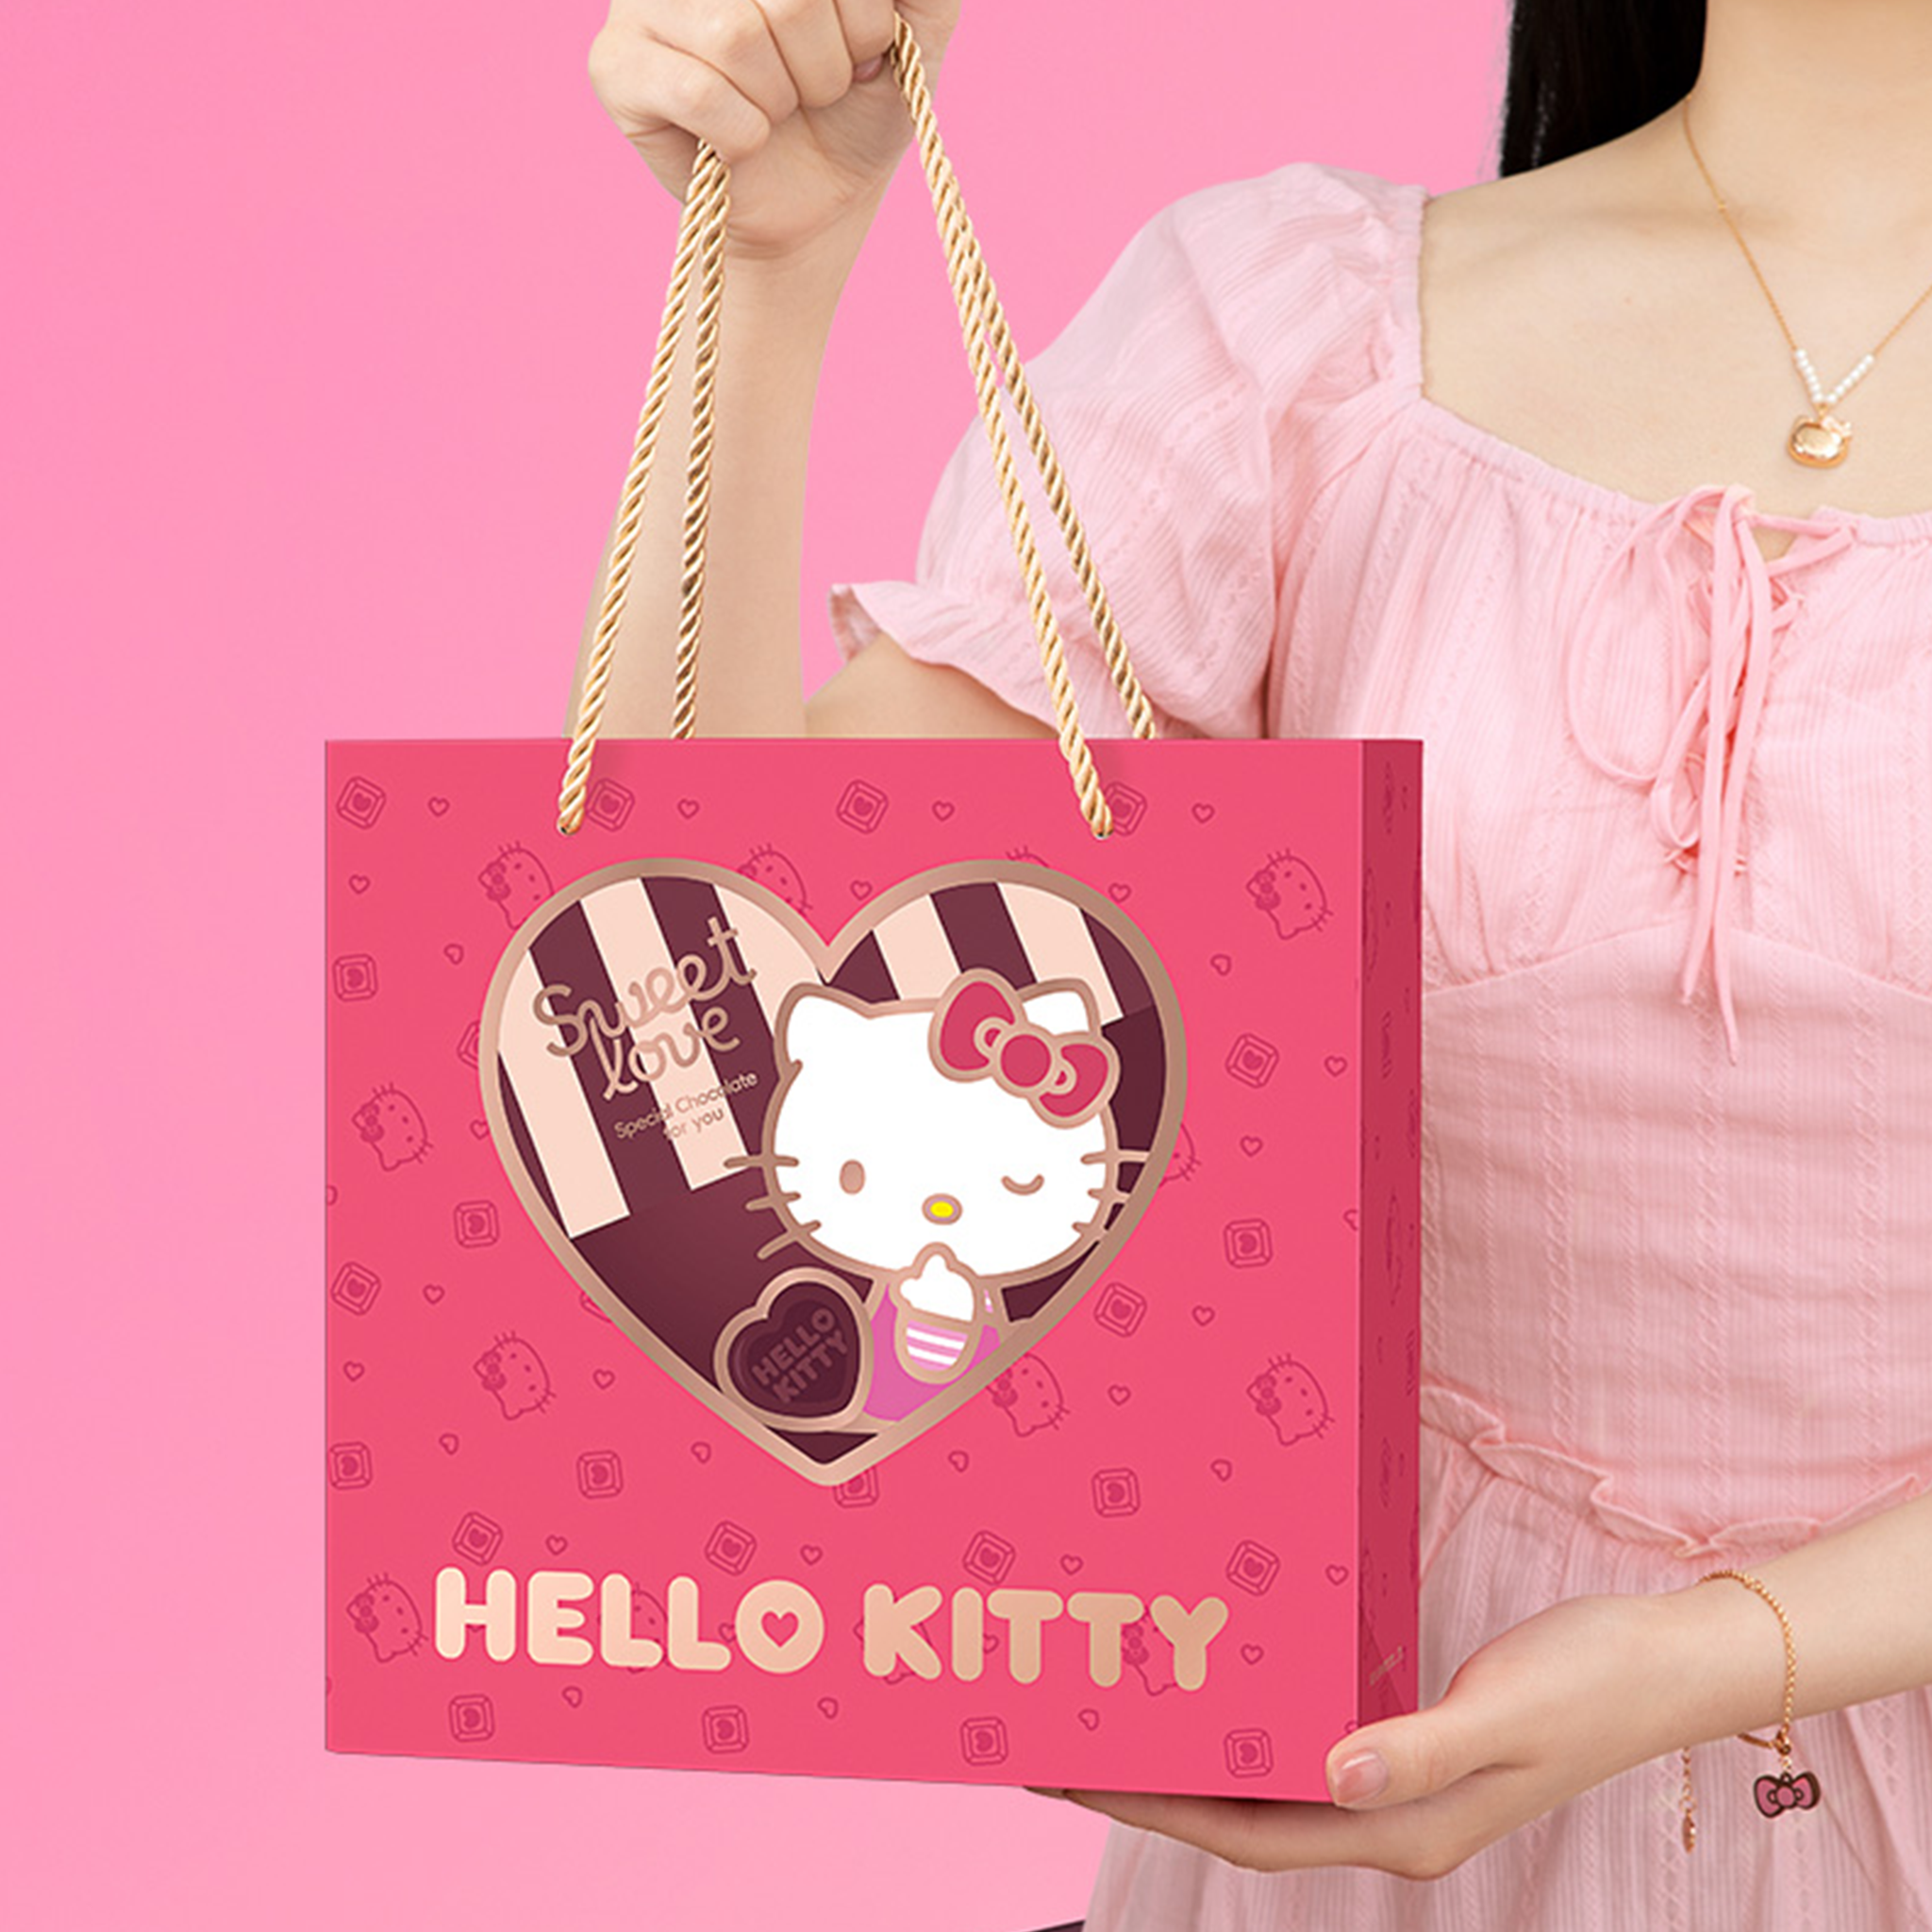 MarTUBE Set de regalo de joyería de chocolate Hello Kitty